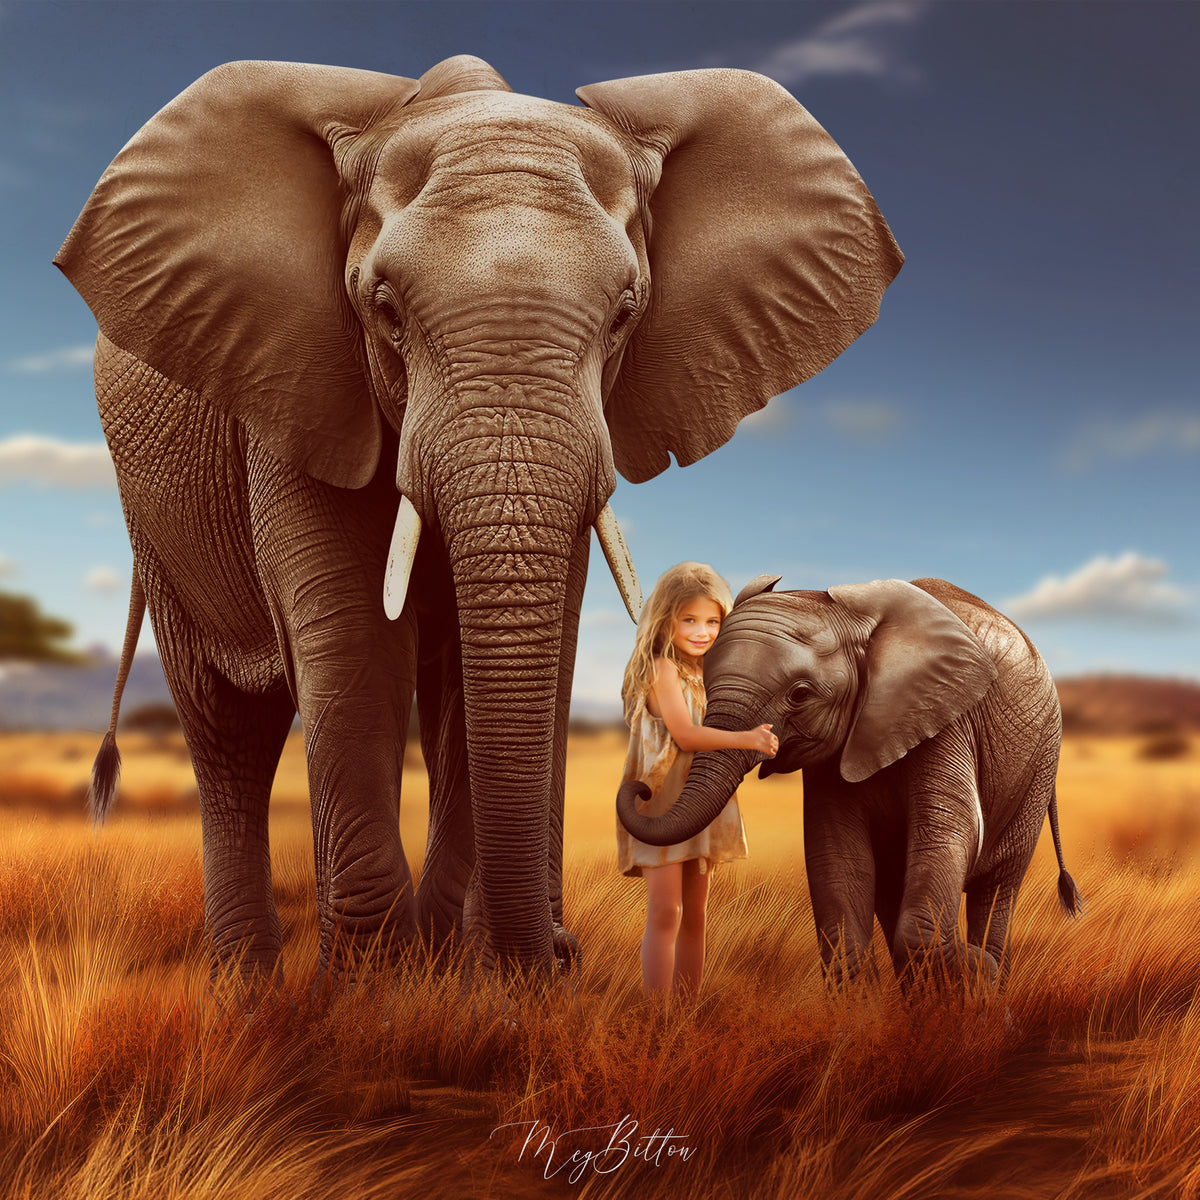 The Elephant Background, Overlay, Texture & Brush Kit